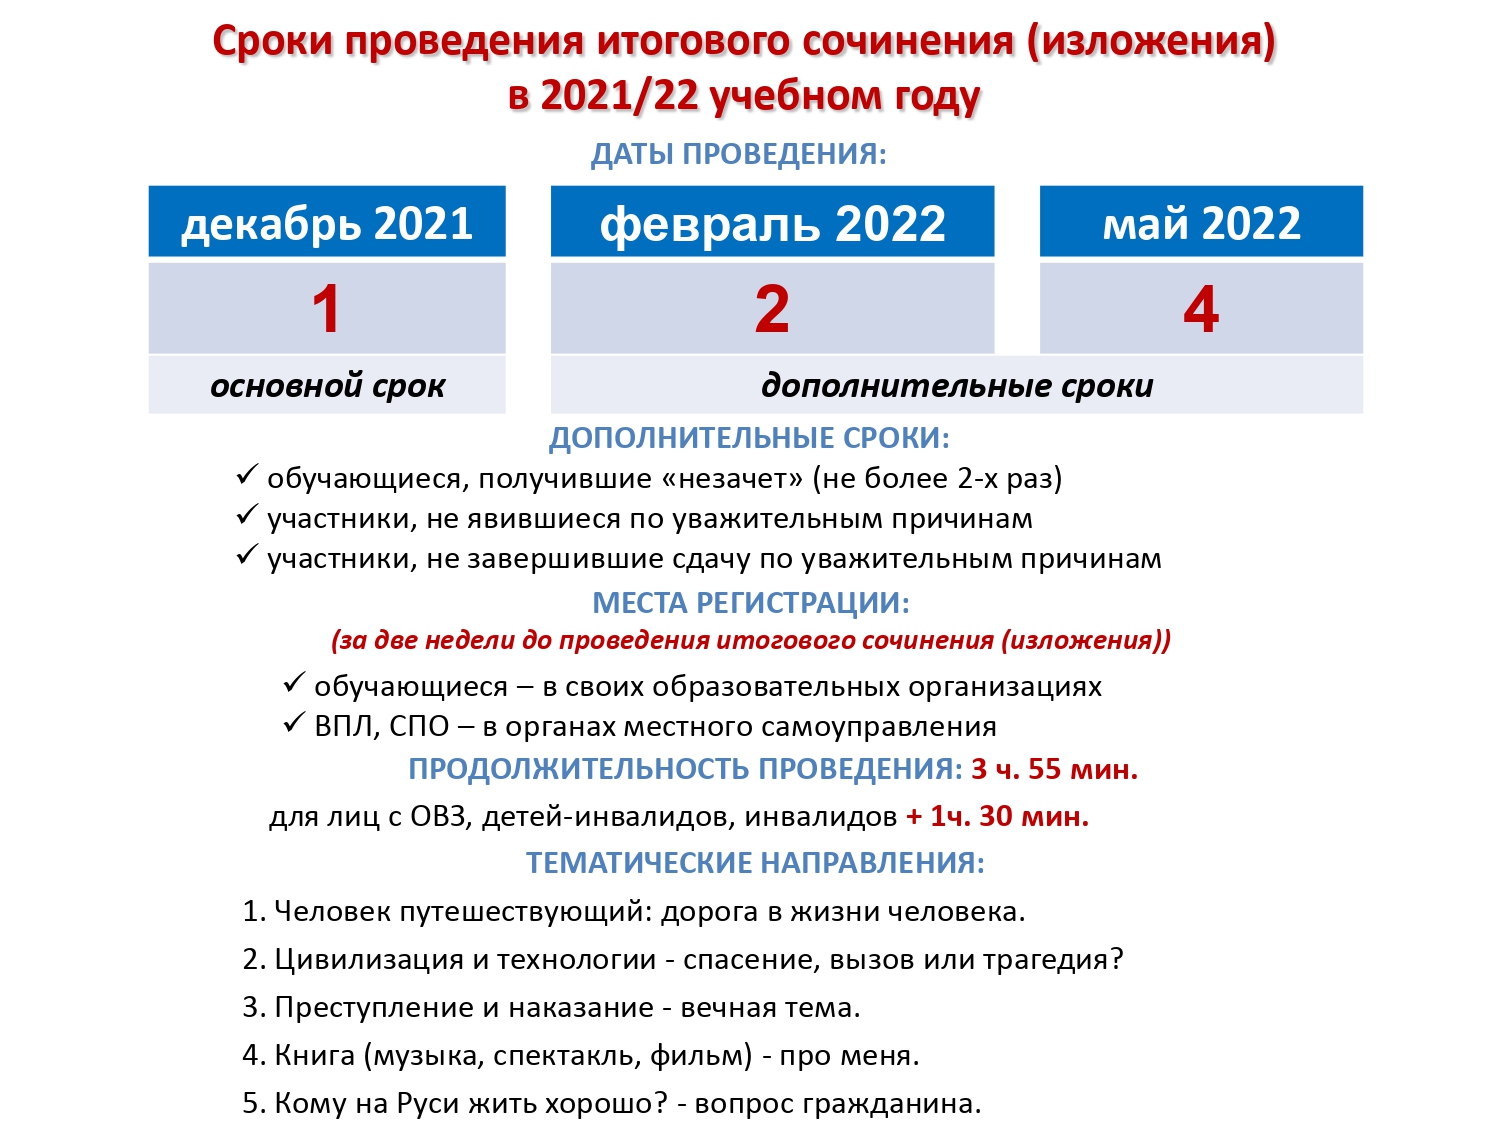 Заявление На Участие В Итоговом Сочинении 2022